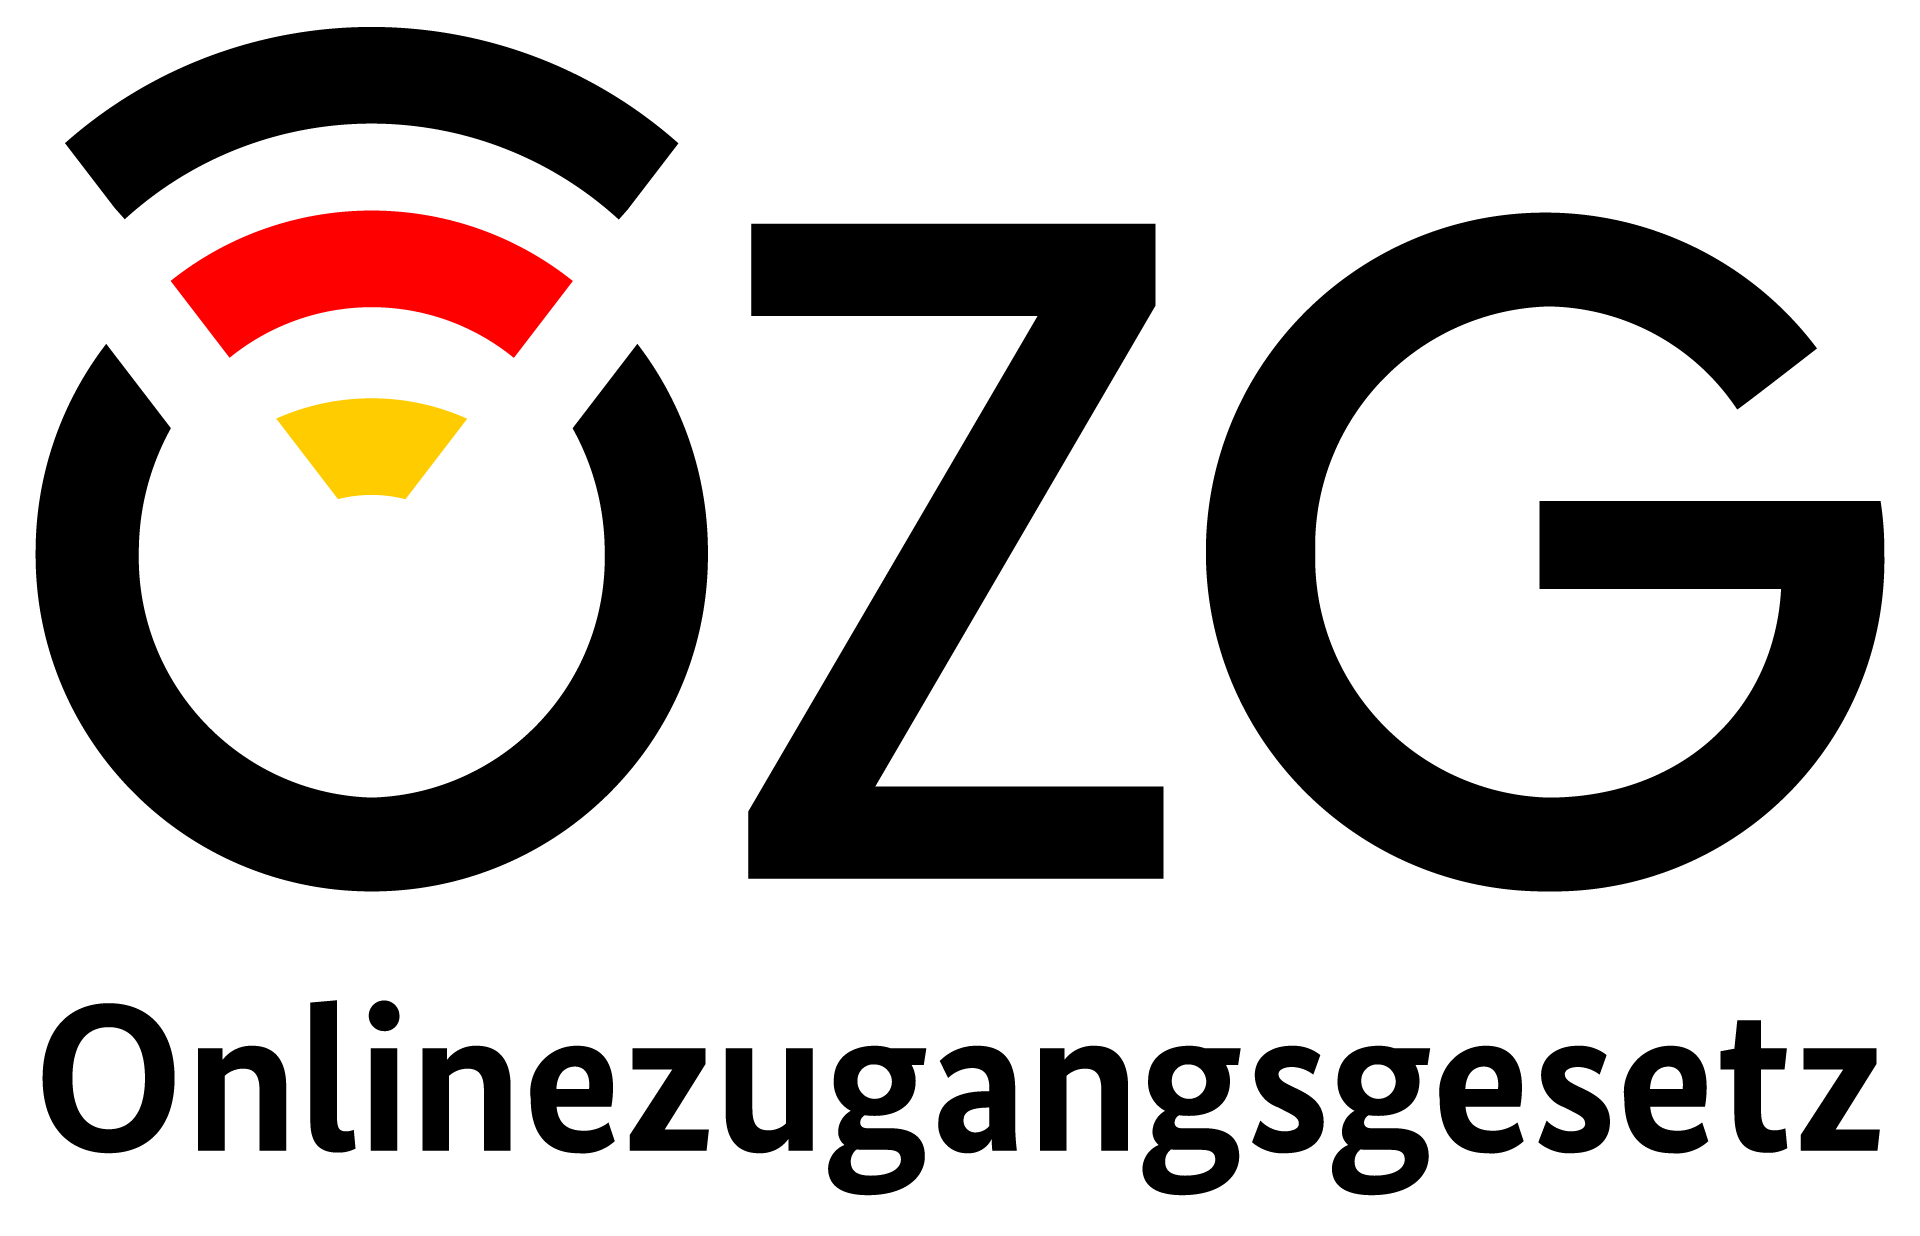 OZG Logo